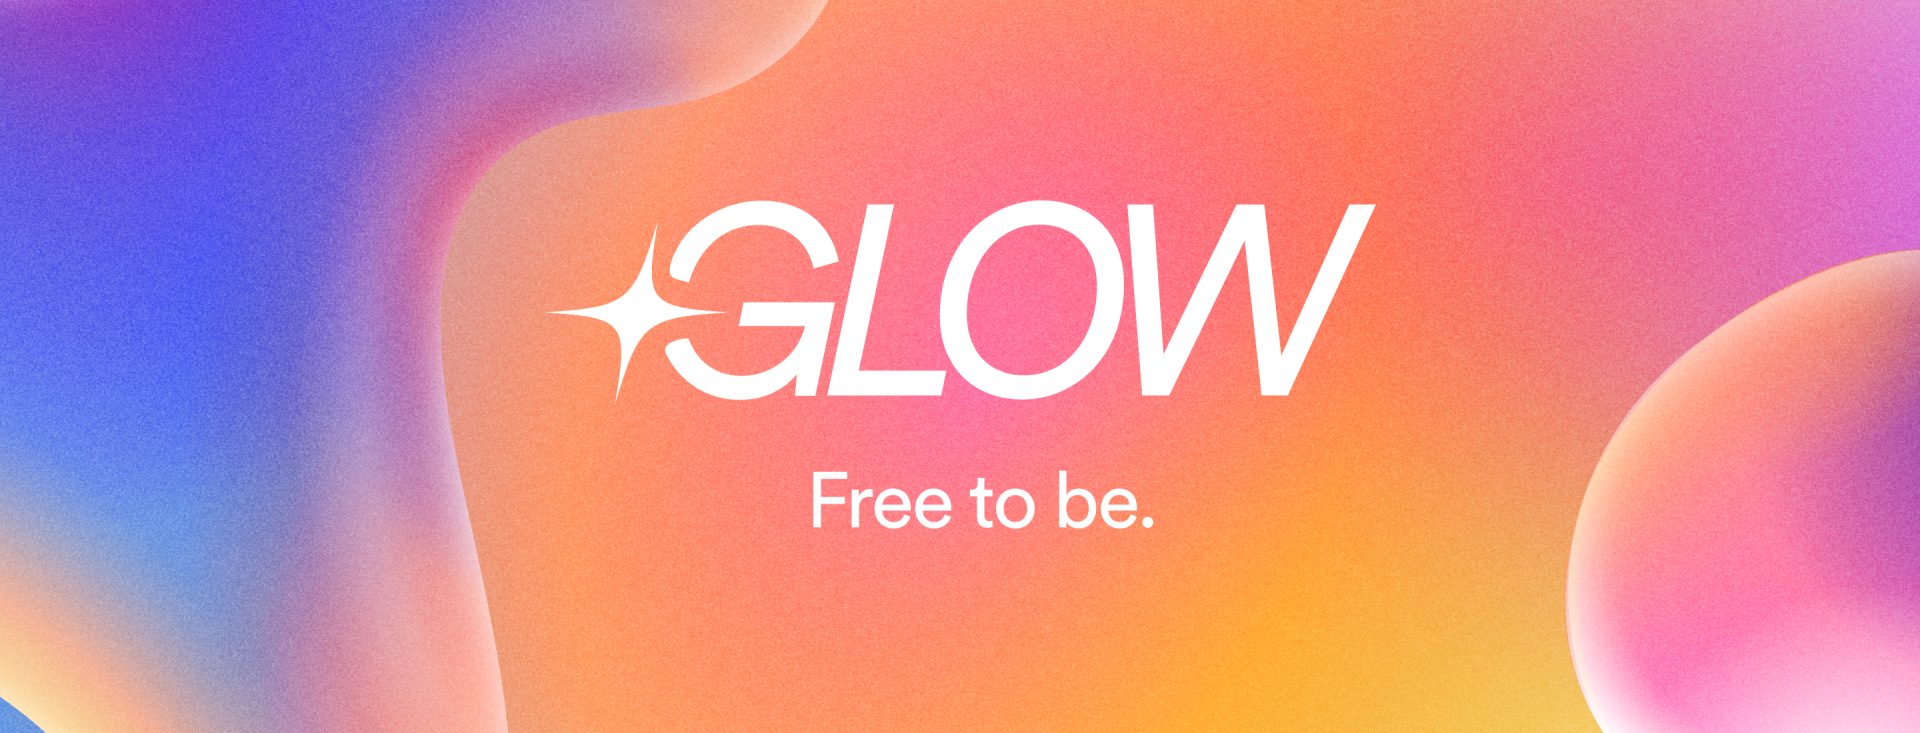 Imagen del programa Glow cuyo lema traducido es "libre para ser"